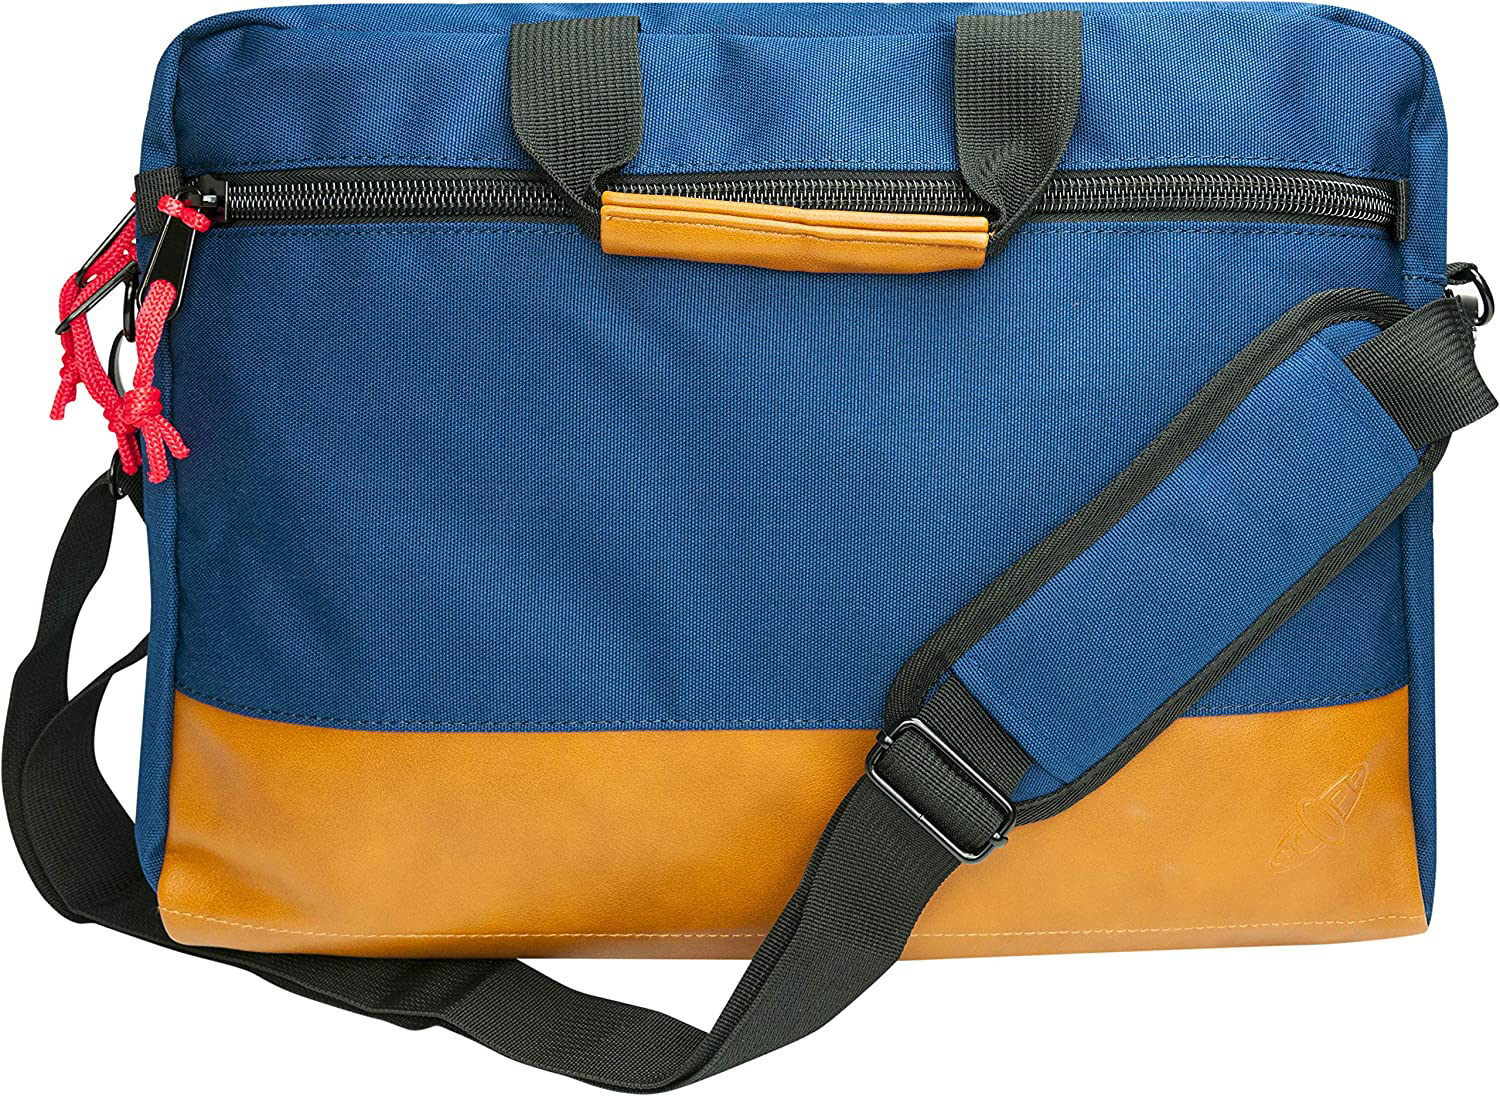 SCOPE -715767- Notebook Tasche / Aktentasche Polyester / Kunstleder, Rucksack blau/braun für Universal